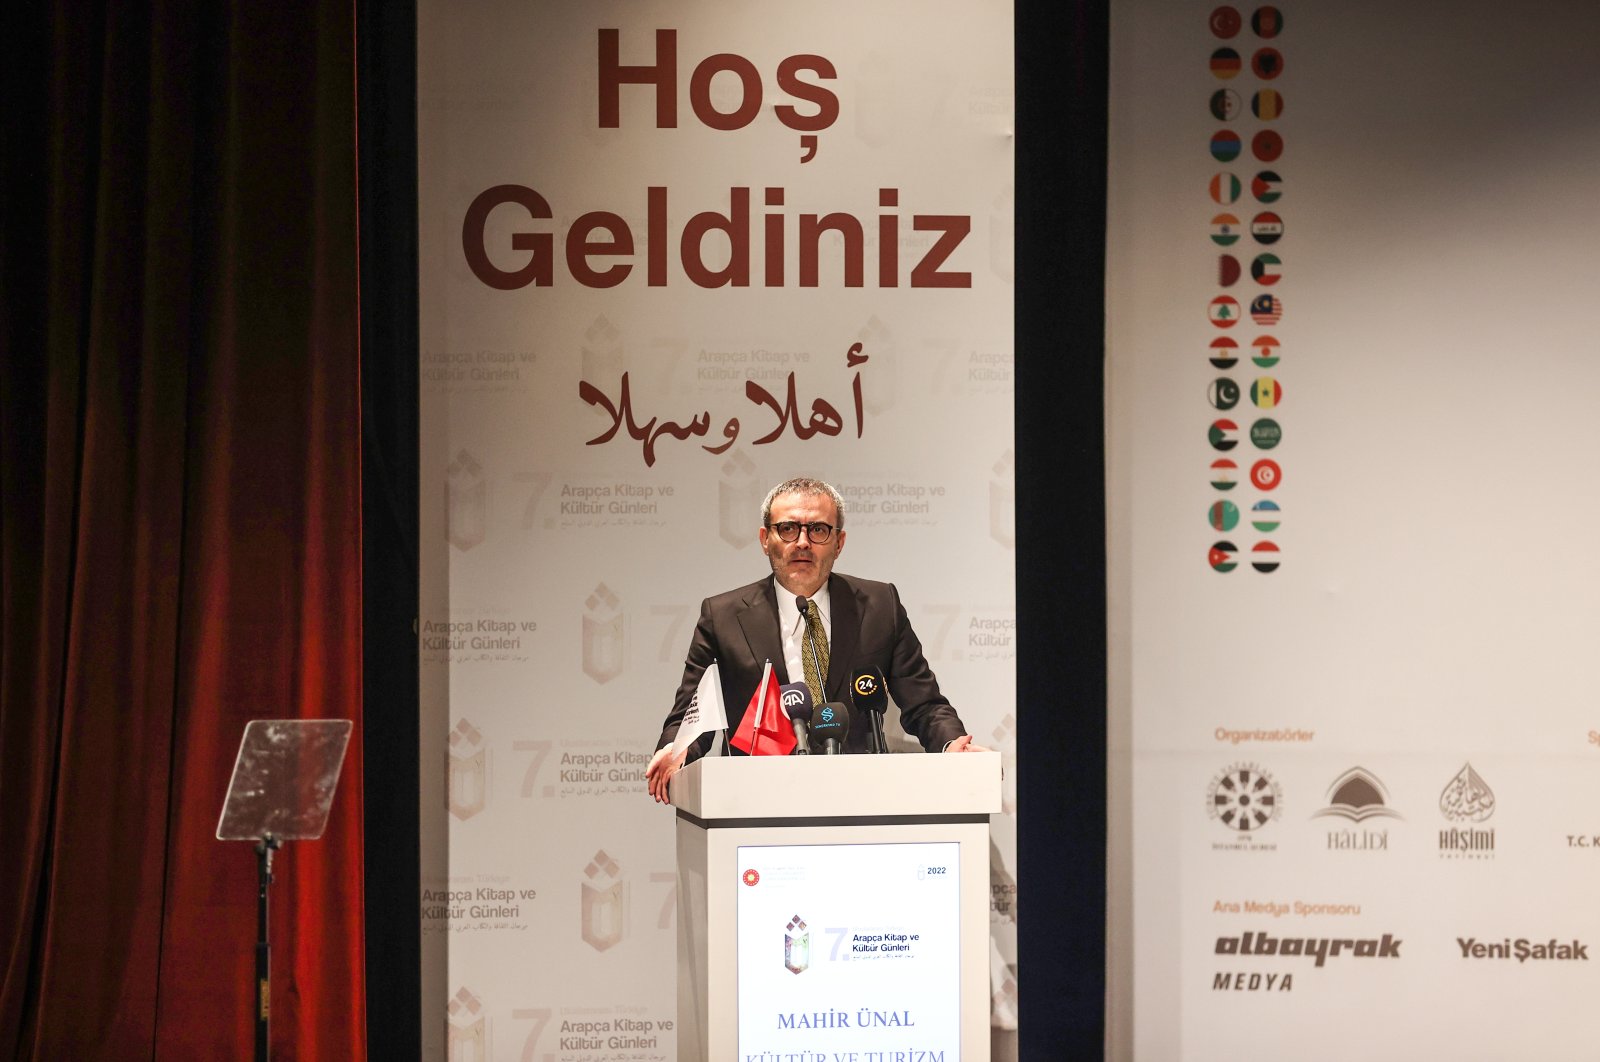 Hari Buku dan Budaya Arab Internasional Türkiye dimulai